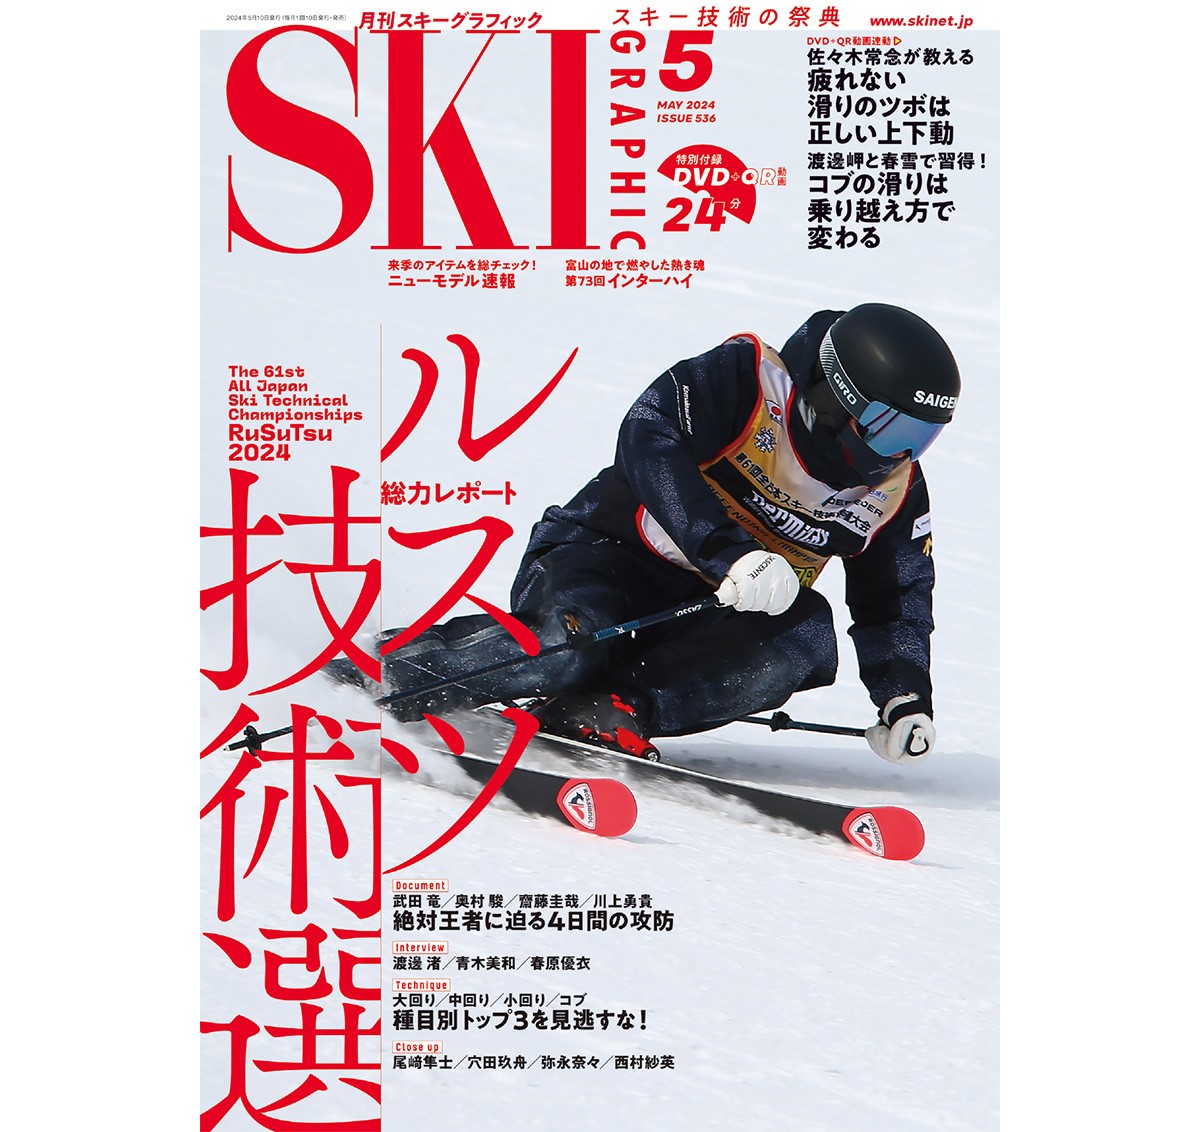 月刊 スキーグラフィック 芸文社 